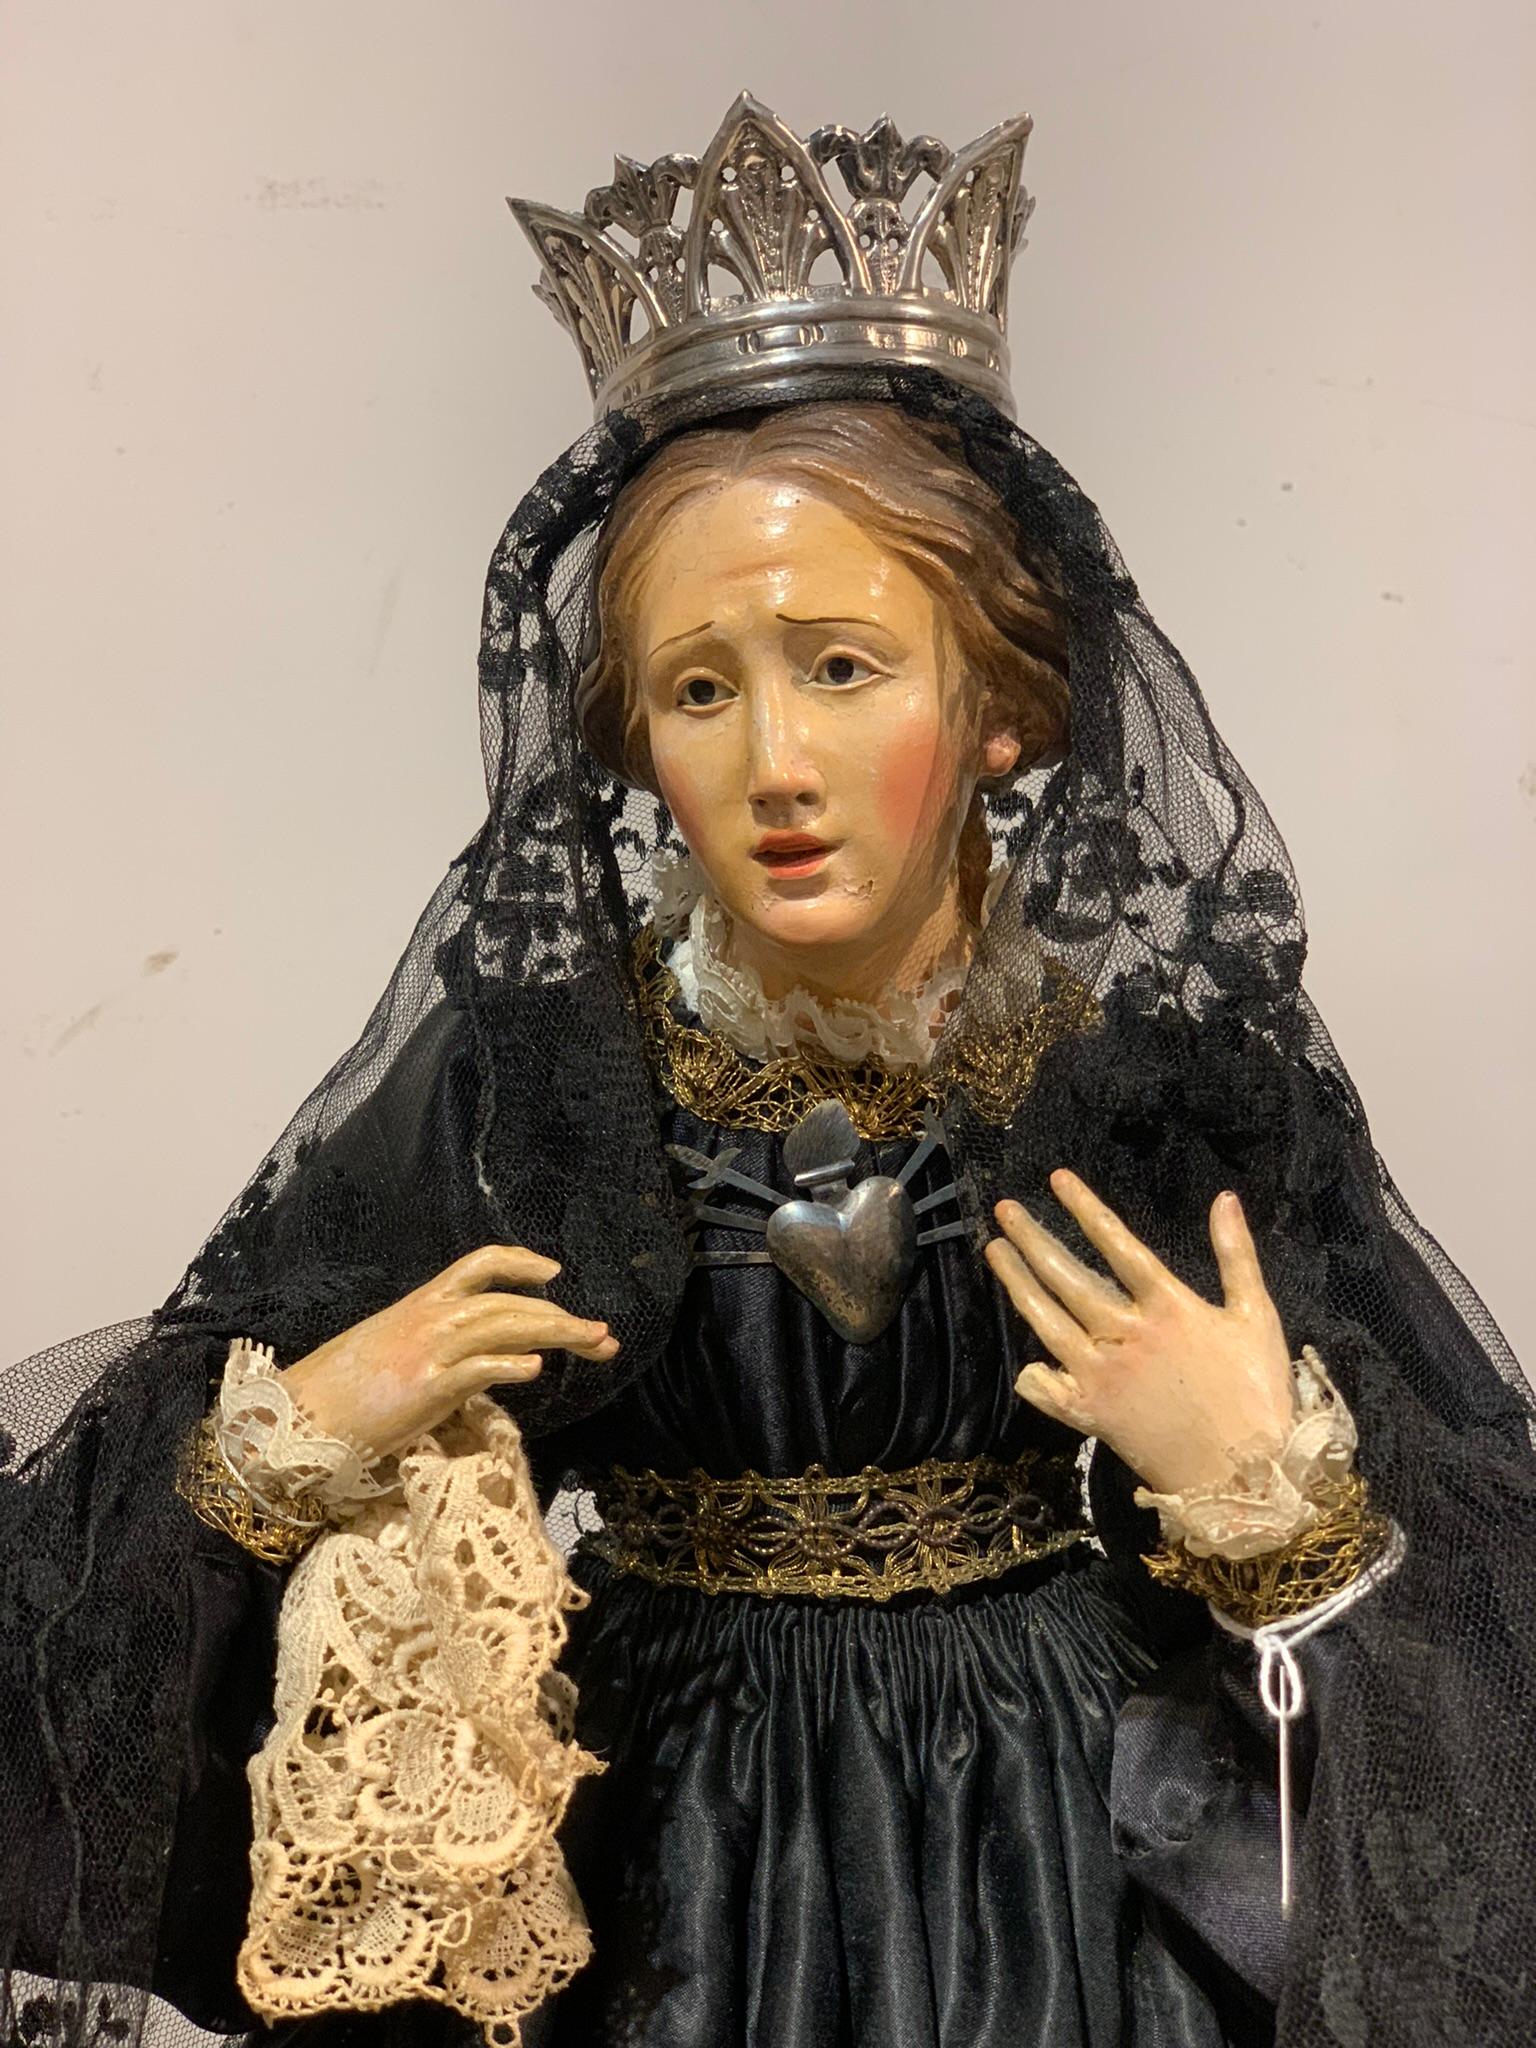 Sculpture représentant la Madone en robe de soie noire avec une coiffe en dentelle. Le personnage est en bois recouvert de vêtements en tissu, la tête et les mains sont en terre cuite polychrome.
La sculpture est complétée par une couronne et un